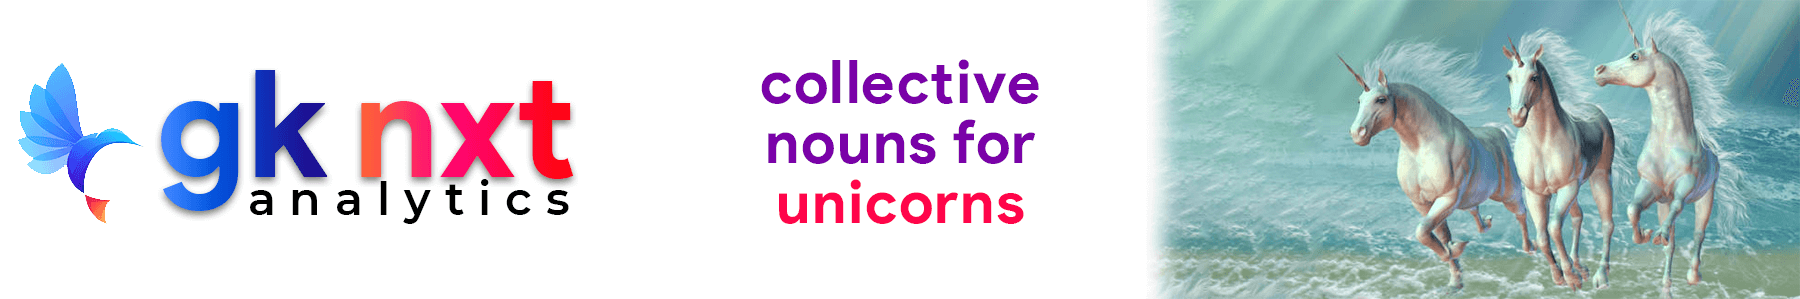 collective noun for unicorns